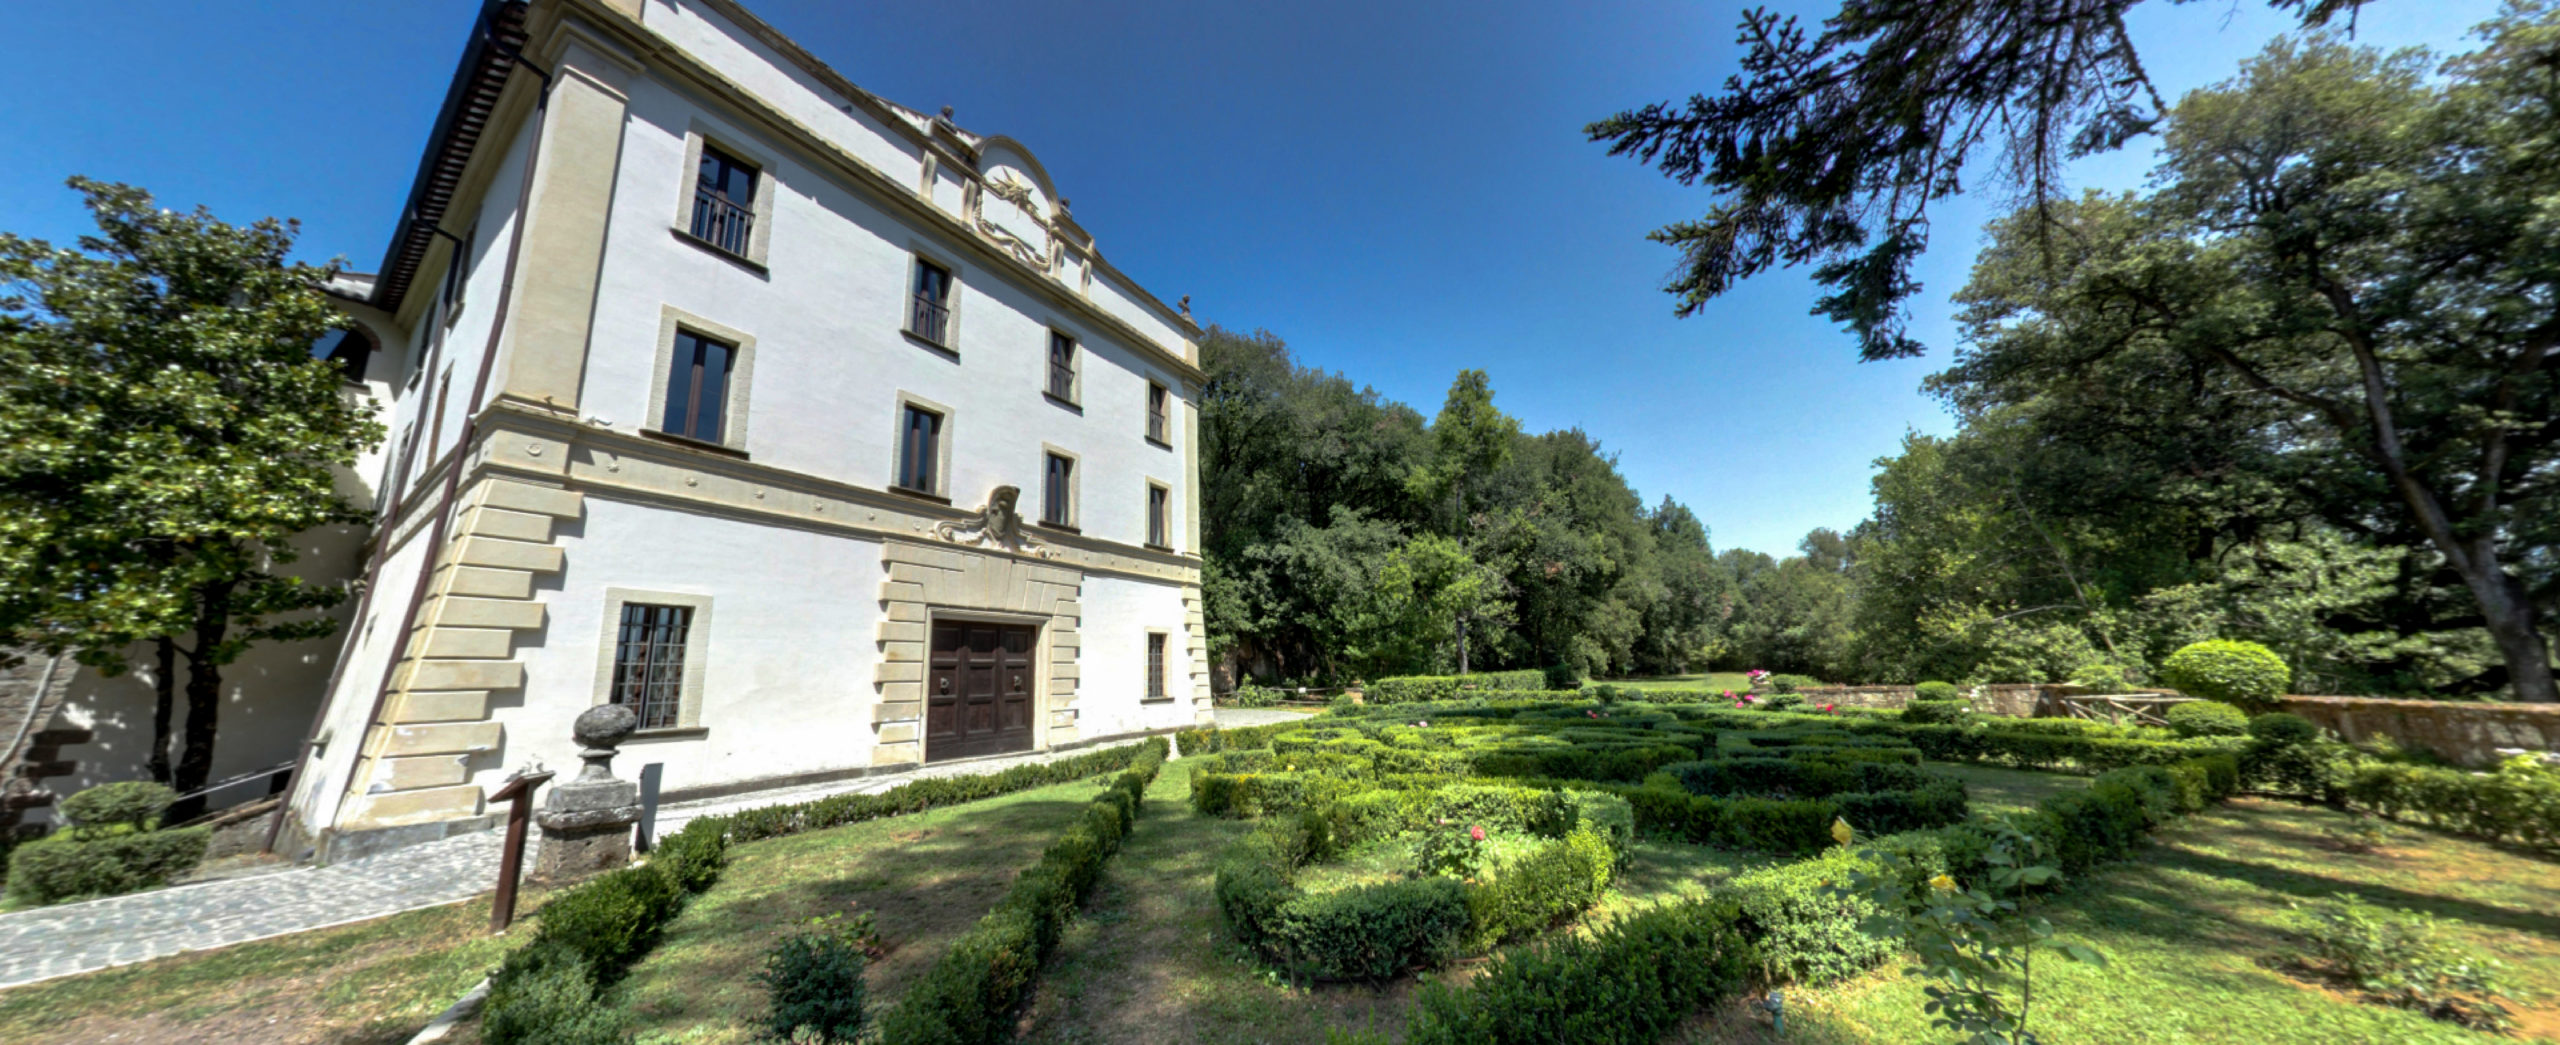 Sutri VT Veduta di Villa Savorelli e del giardino all'italiana